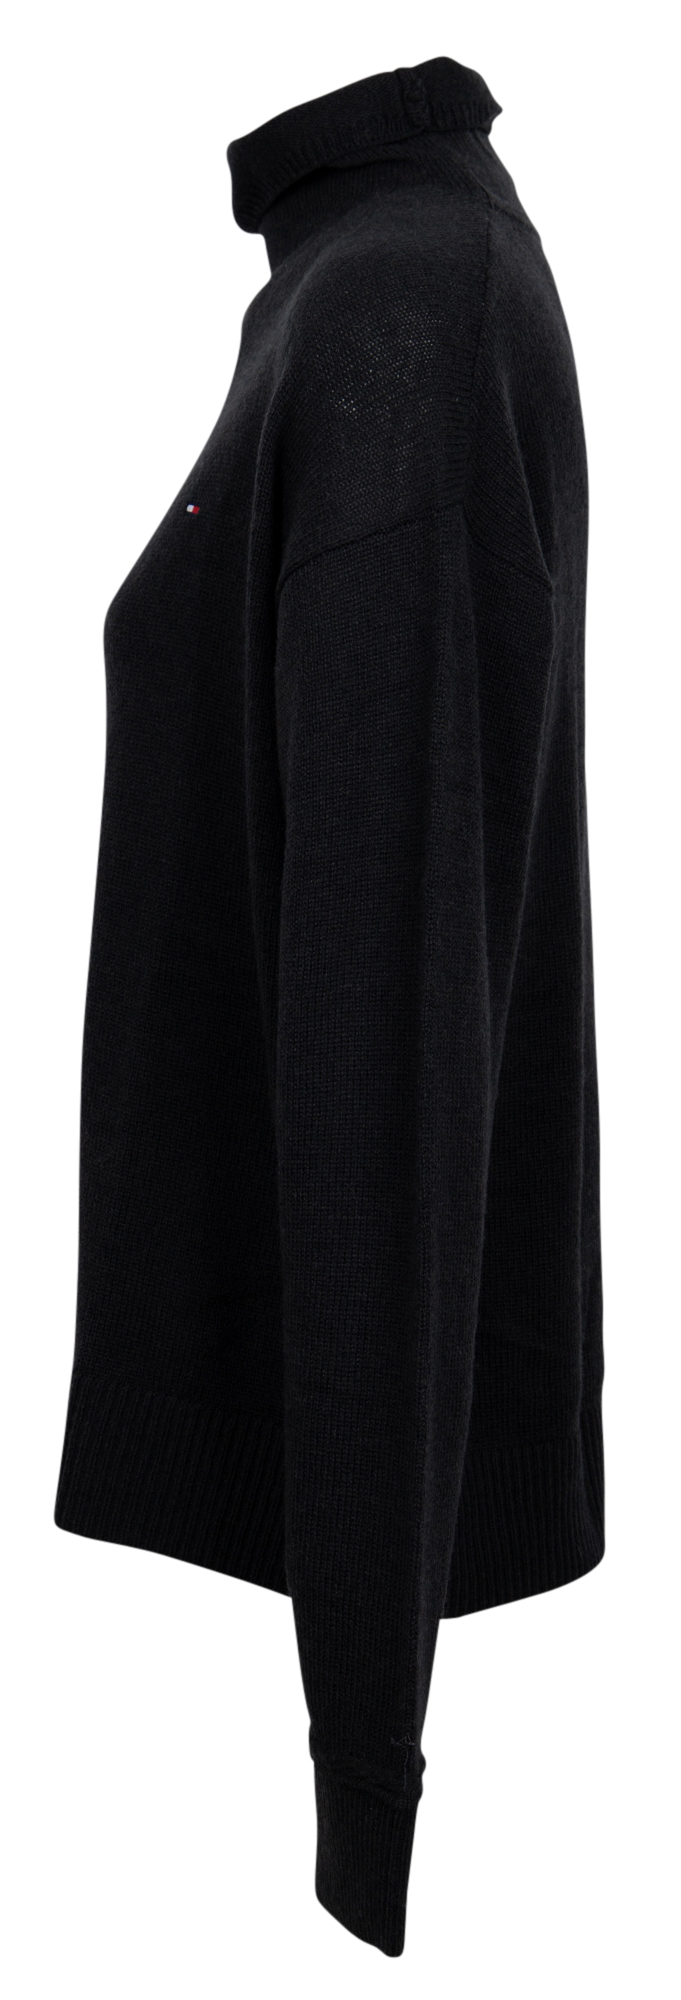 softwool-mock-nk-sweater-schwarz